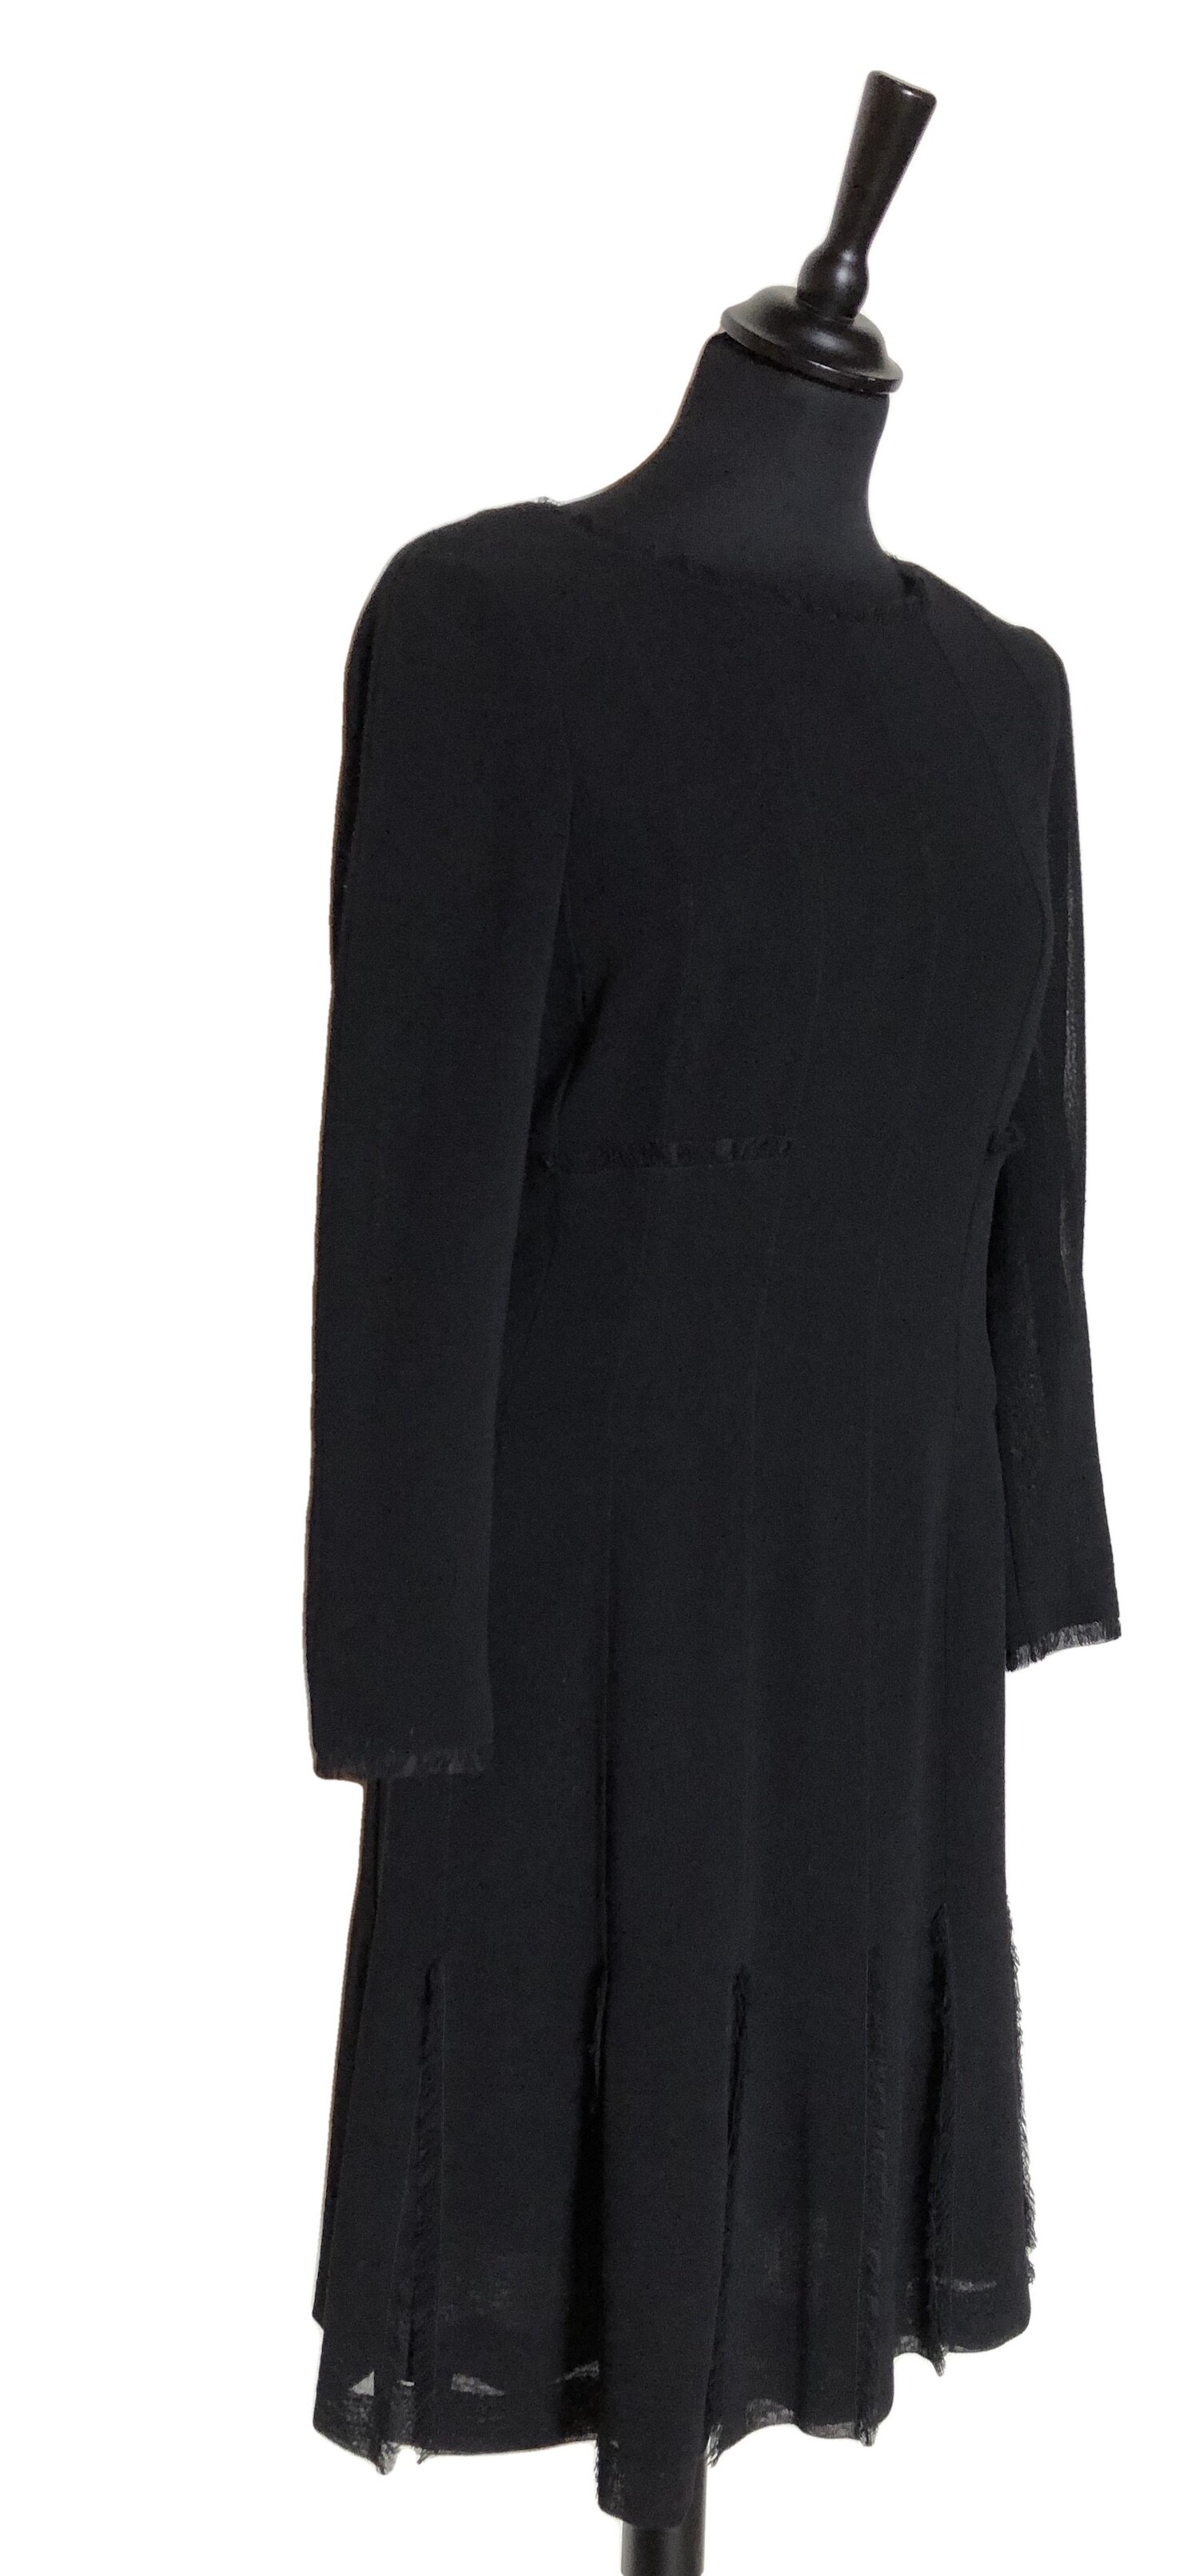 Chanel Black Silk Crochet Knit Dress CC Star Logo Buttons 38